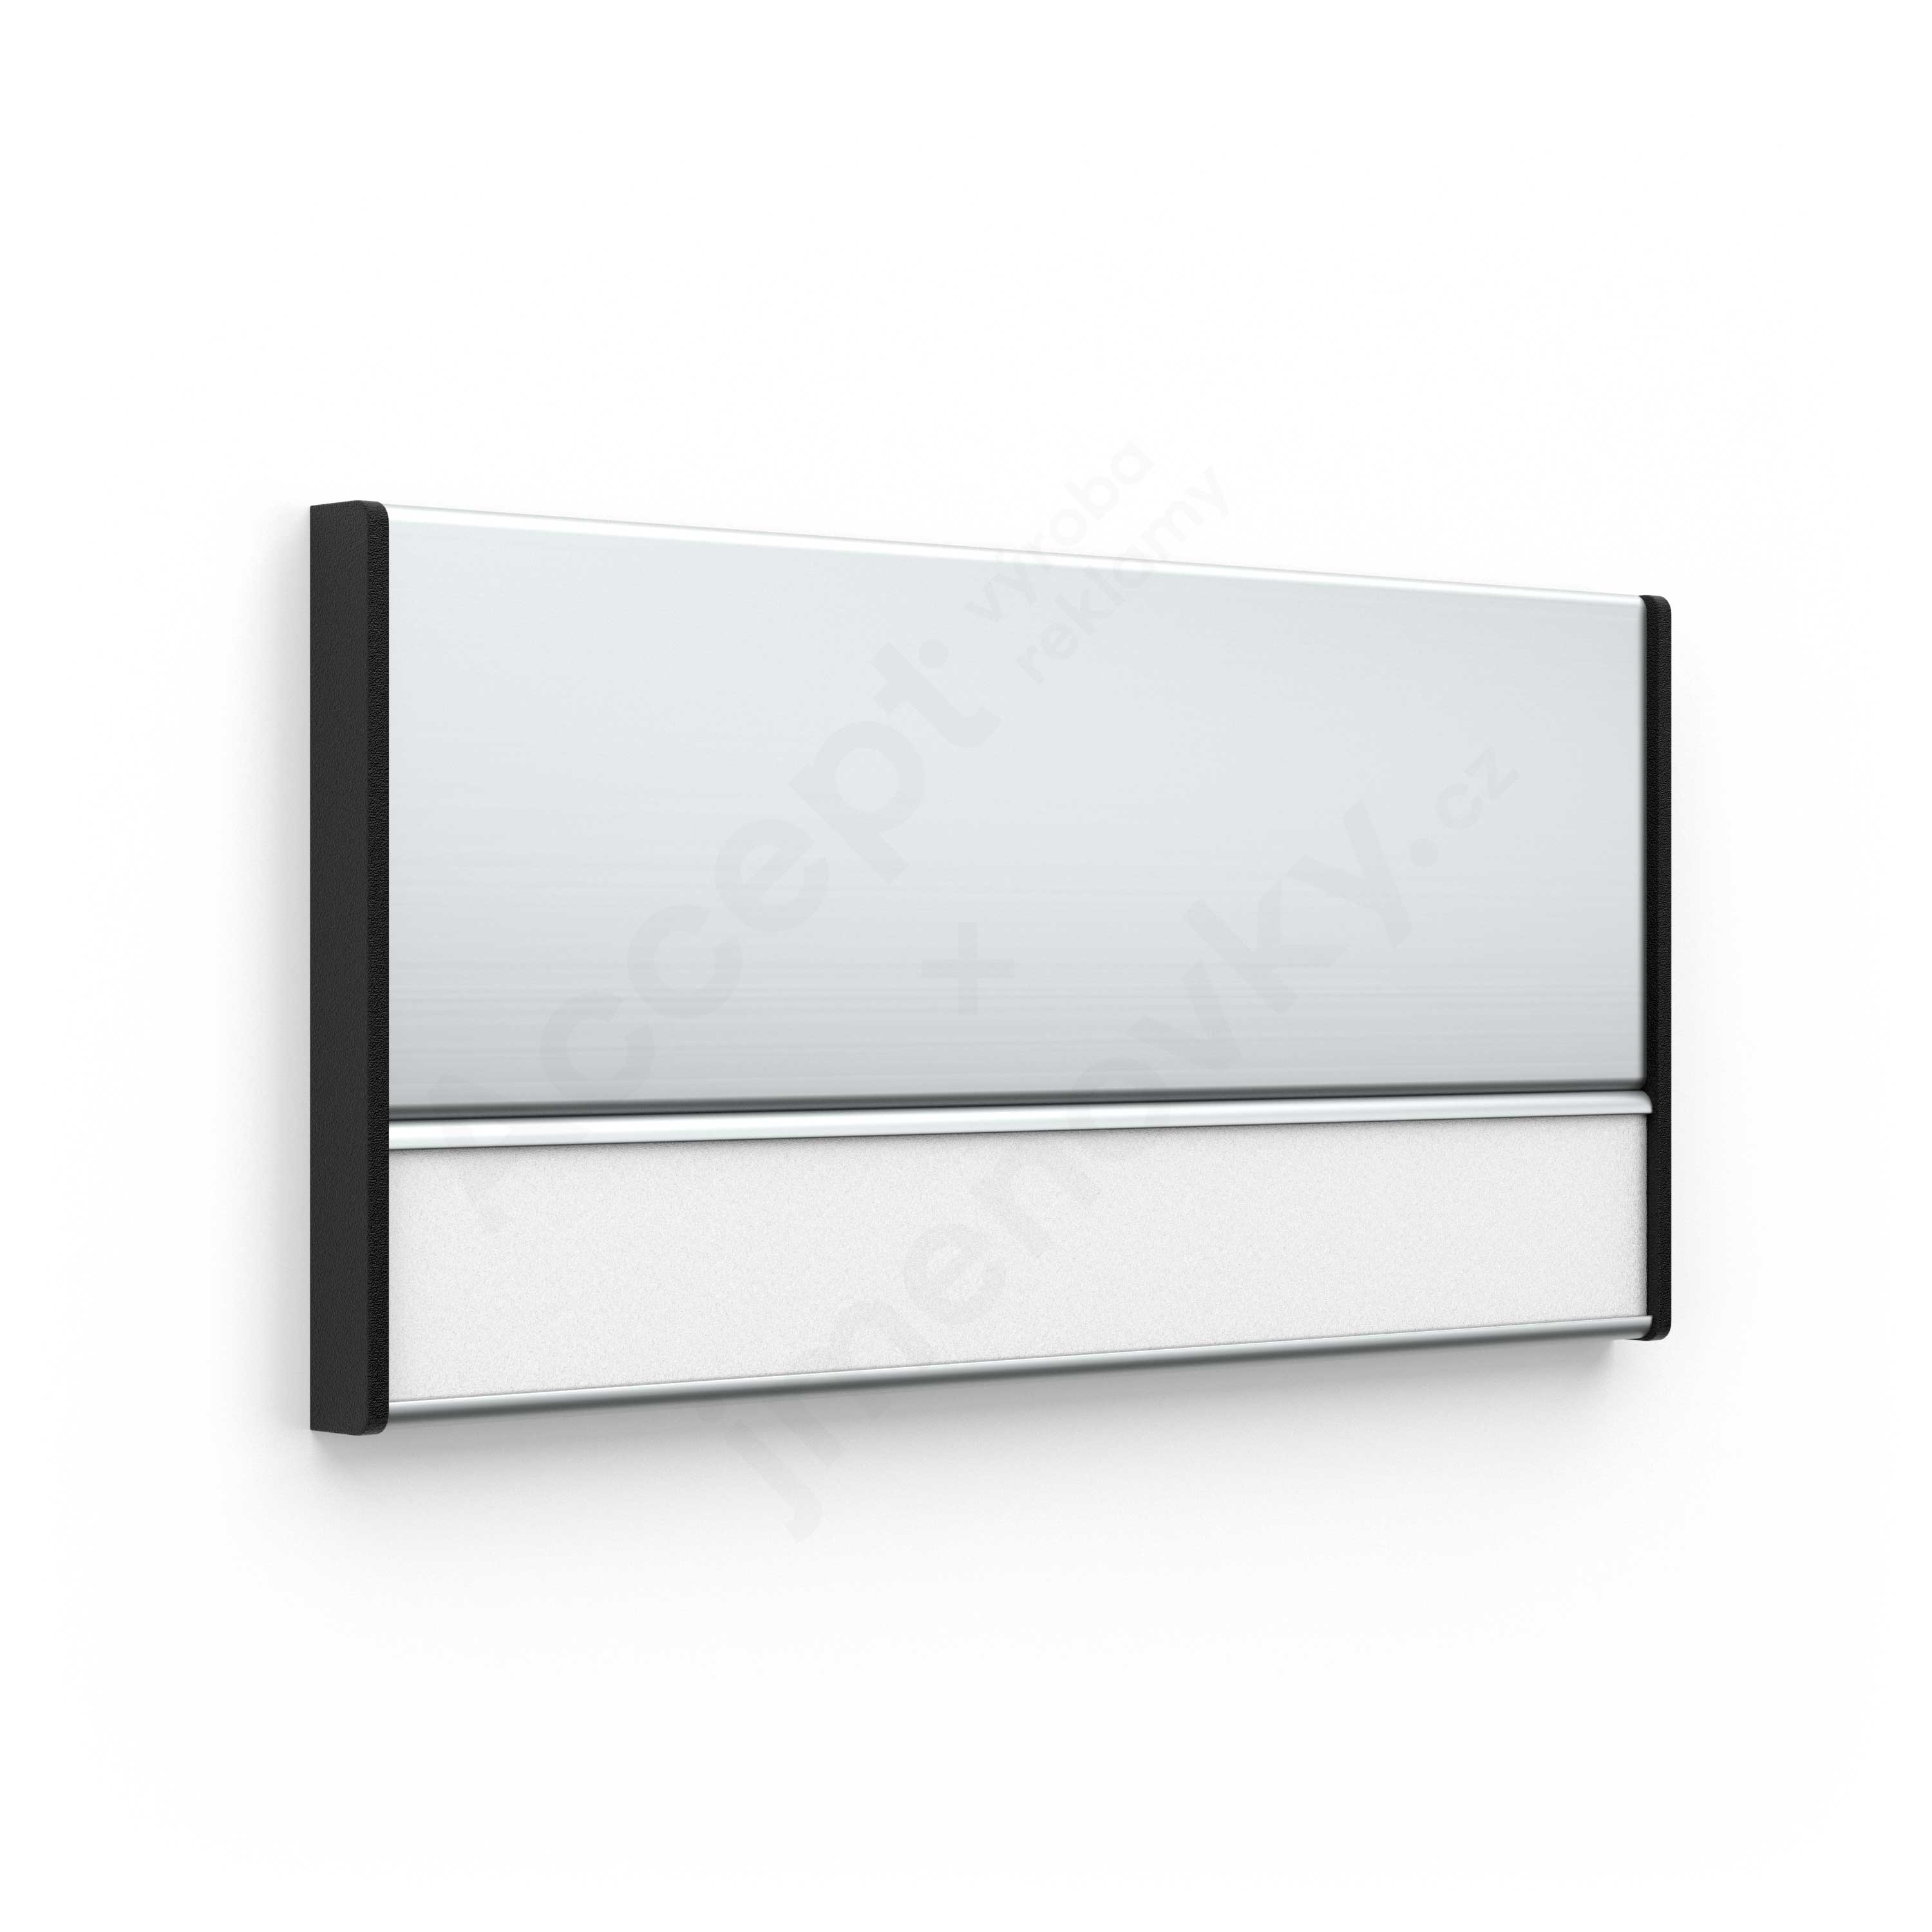 Dveřní tabulka ACS stříbrná (kombinovaný systém, 187 x 93 mm)